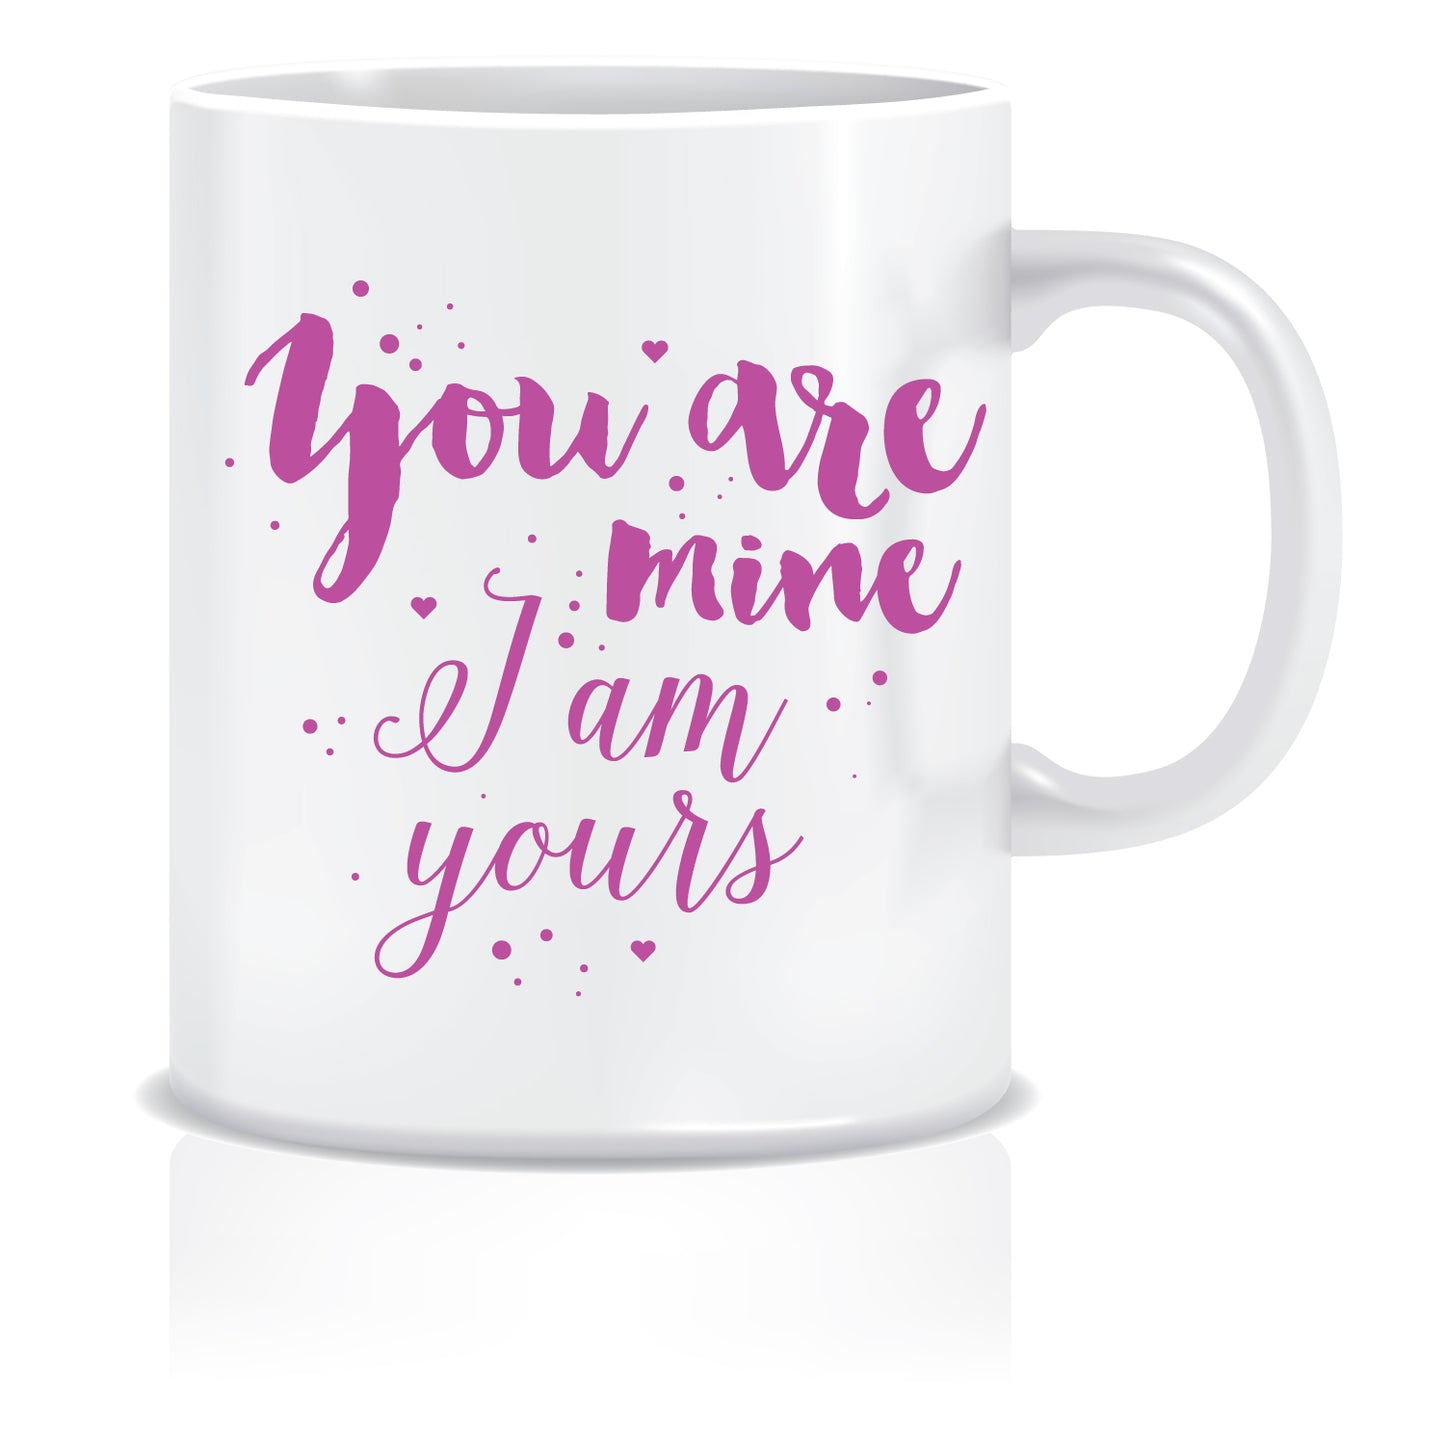 You are mine Coffee Mug | ED416